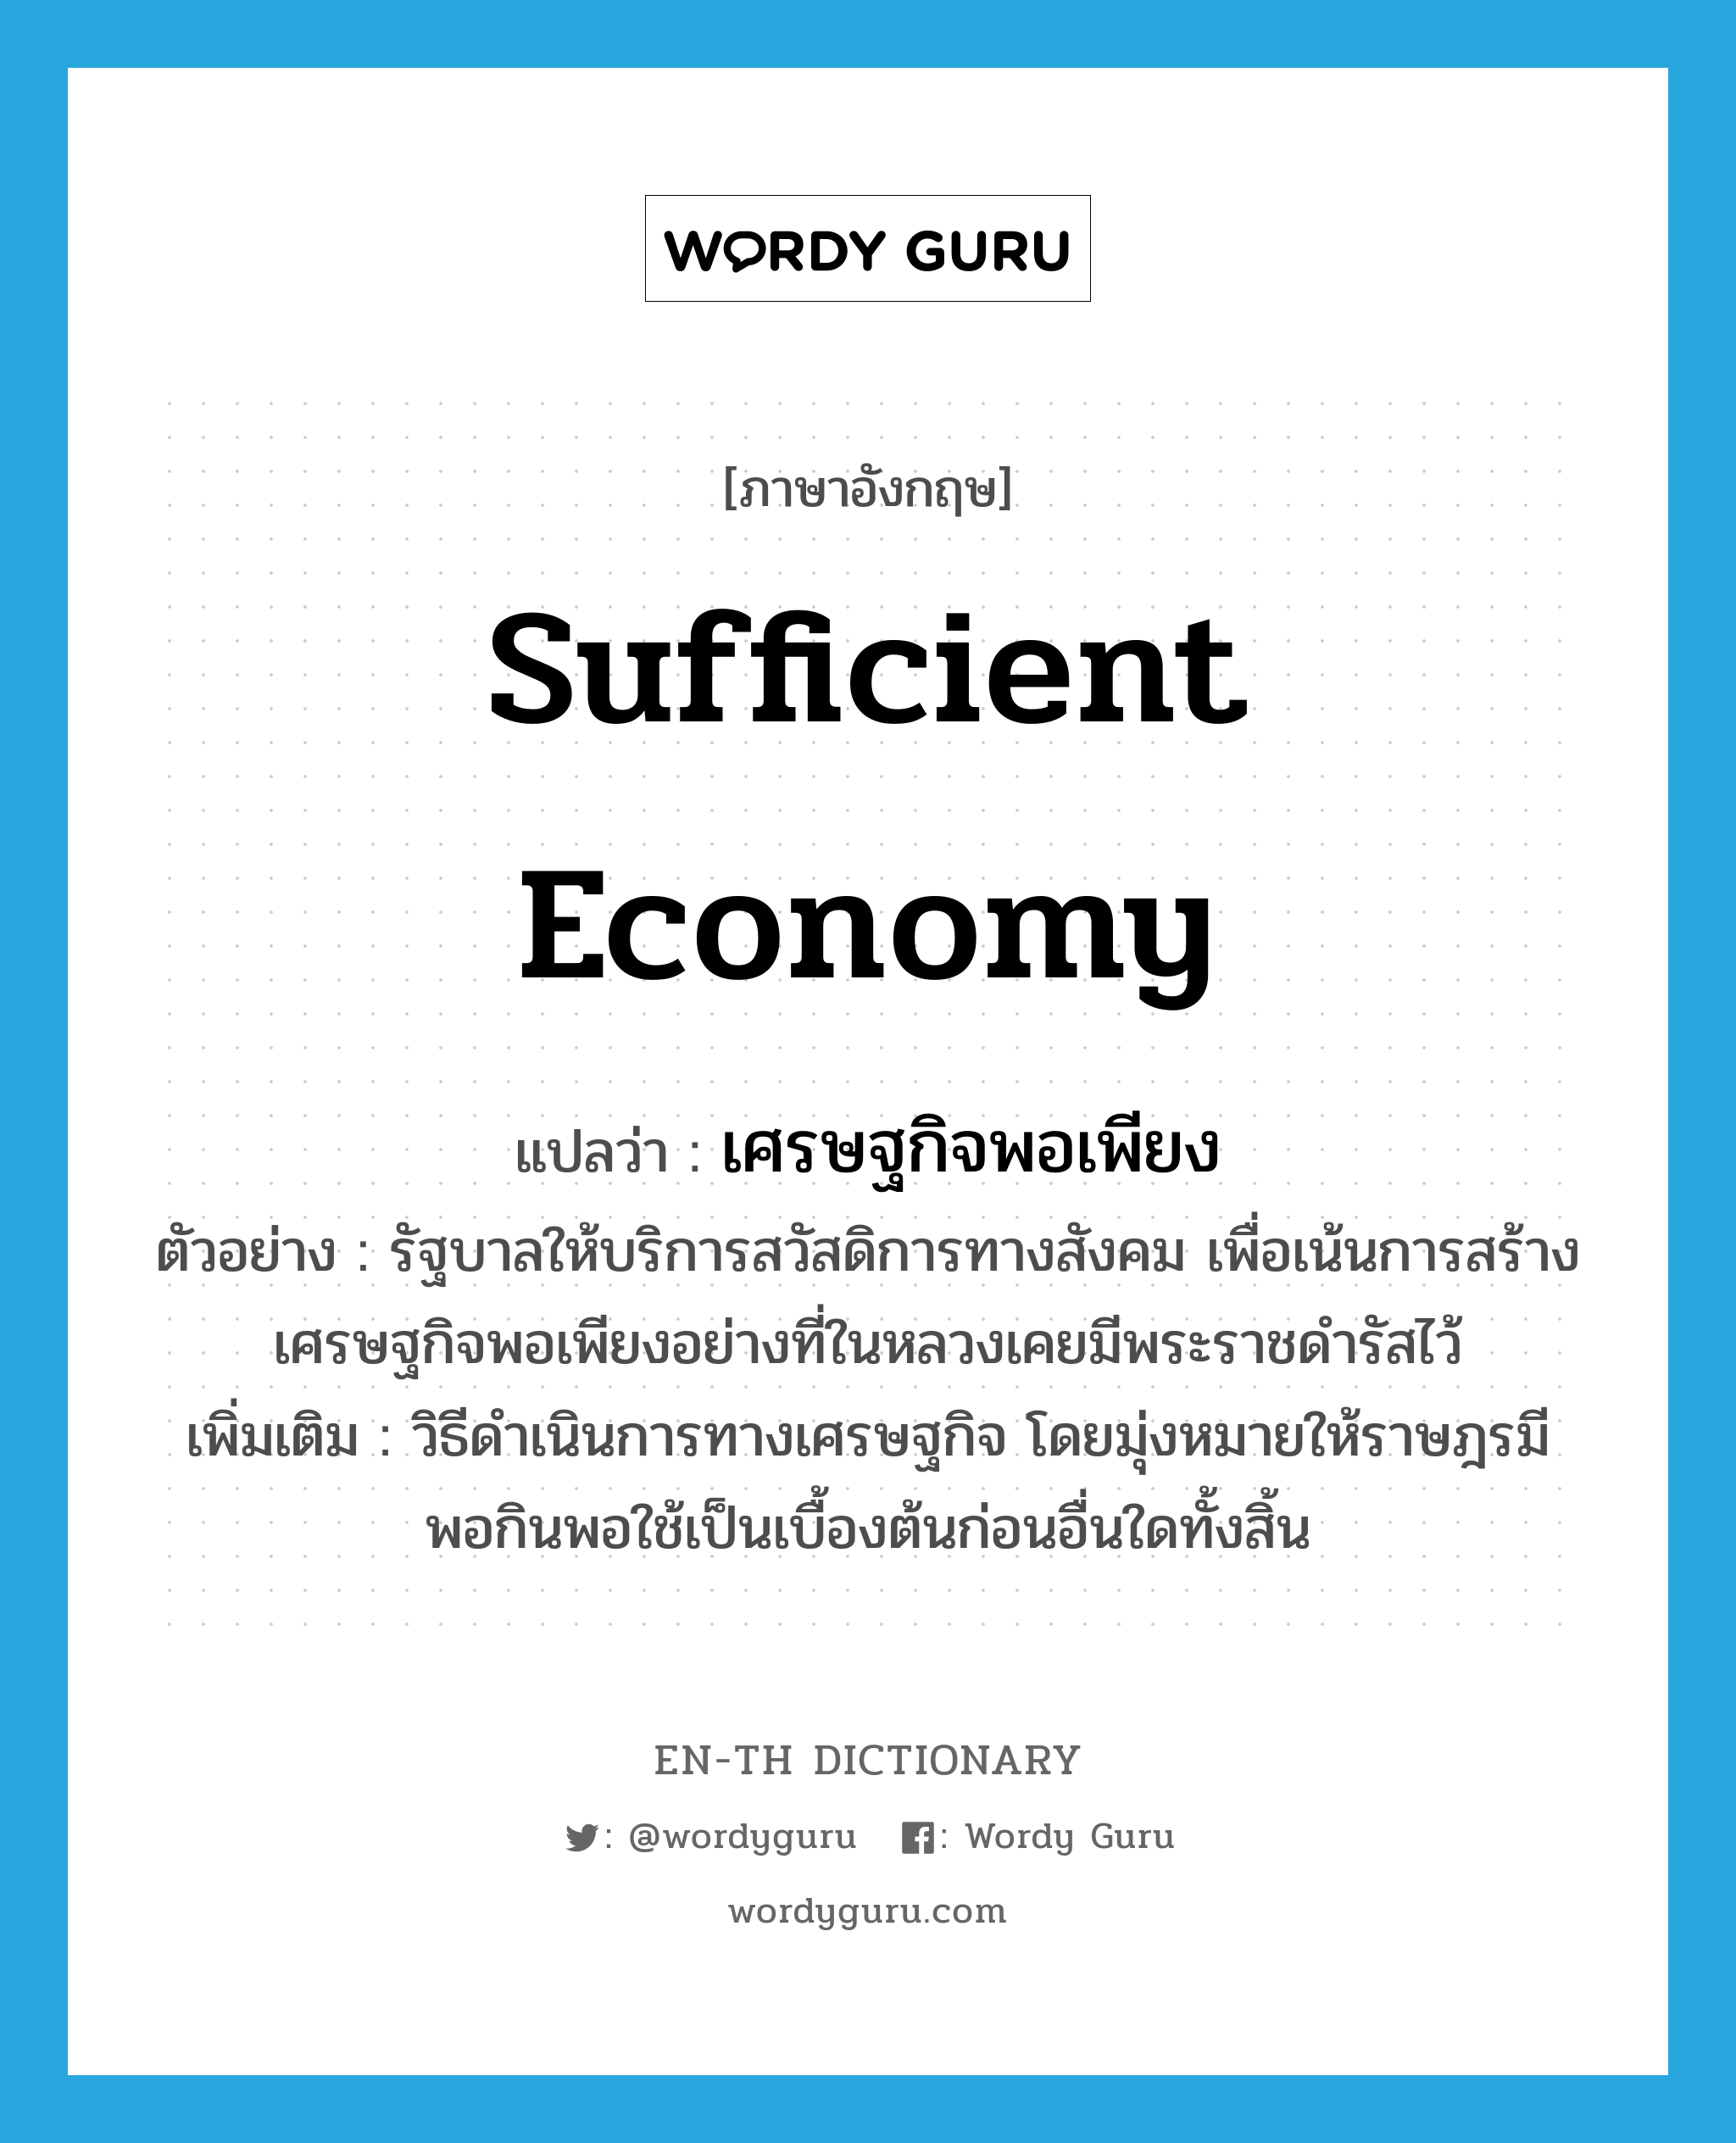 sufficient economy แปลว่า?, คำศัพท์ภาษาอังกฤษ sufficient economy แปลว่า เศรษฐกิจพอเพียง ประเภท N ตัวอย่าง รัฐบาลให้บริการสวัสดิการทางสังคม เพื่อเน้นการสร้างเศรษฐกิจพอเพียงอย่างที่ในหลวงเคยมีพระราชดำรัสไว้ เพิ่มเติม วิธีดำเนินการทางเศรษฐกิจ โดยมุ่งหมายให้ราษฎรมีพอกินพอใช้เป็นเบื้องต้นก่อนอื่นใดทั้งสิ้น หมวด N